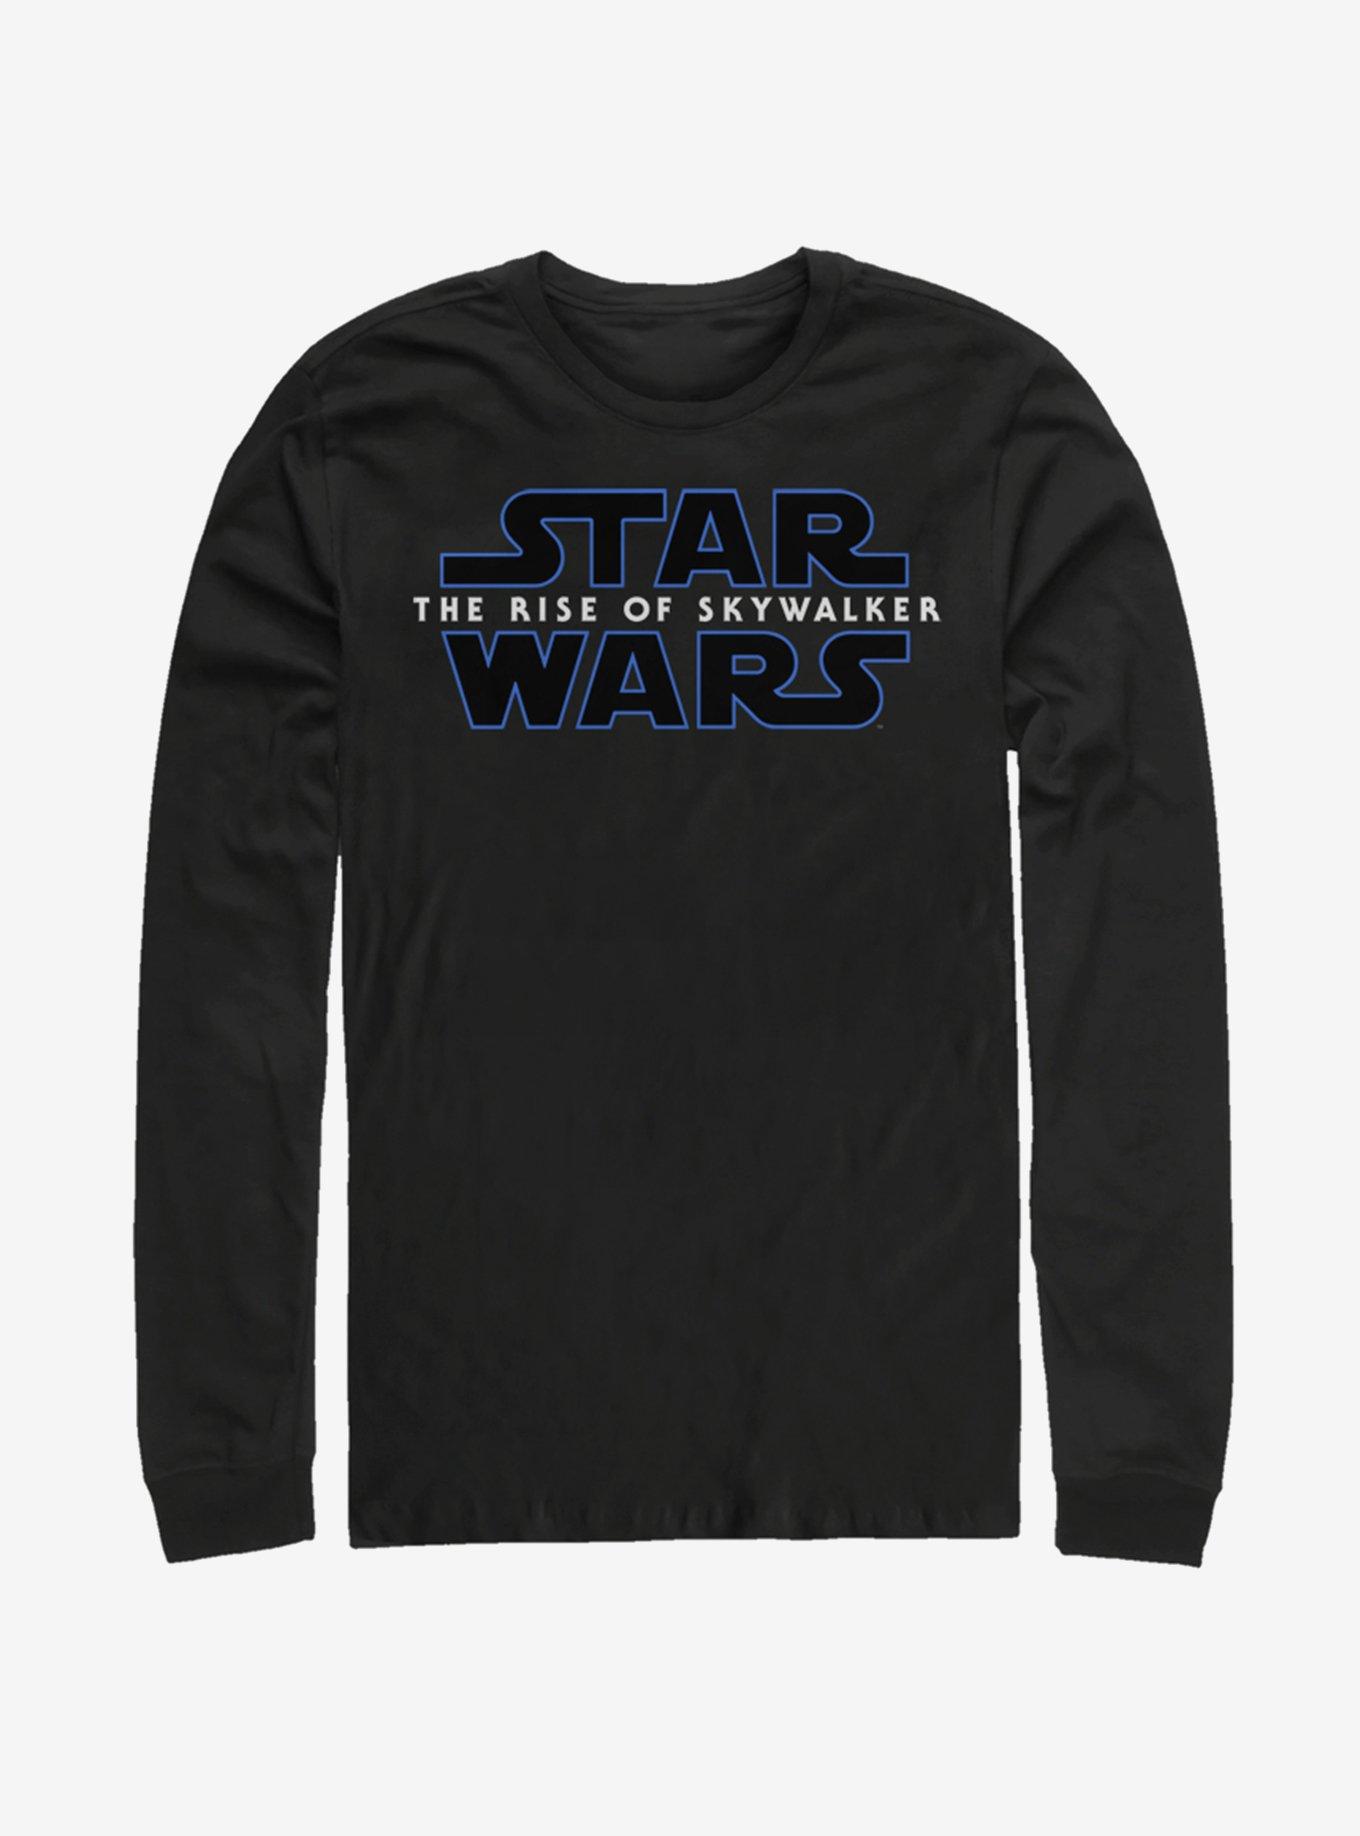 Star Wars Episode IX The Rise of Skywalker Logo Long-Sleeve T-Shirt, BLACK, hi-res